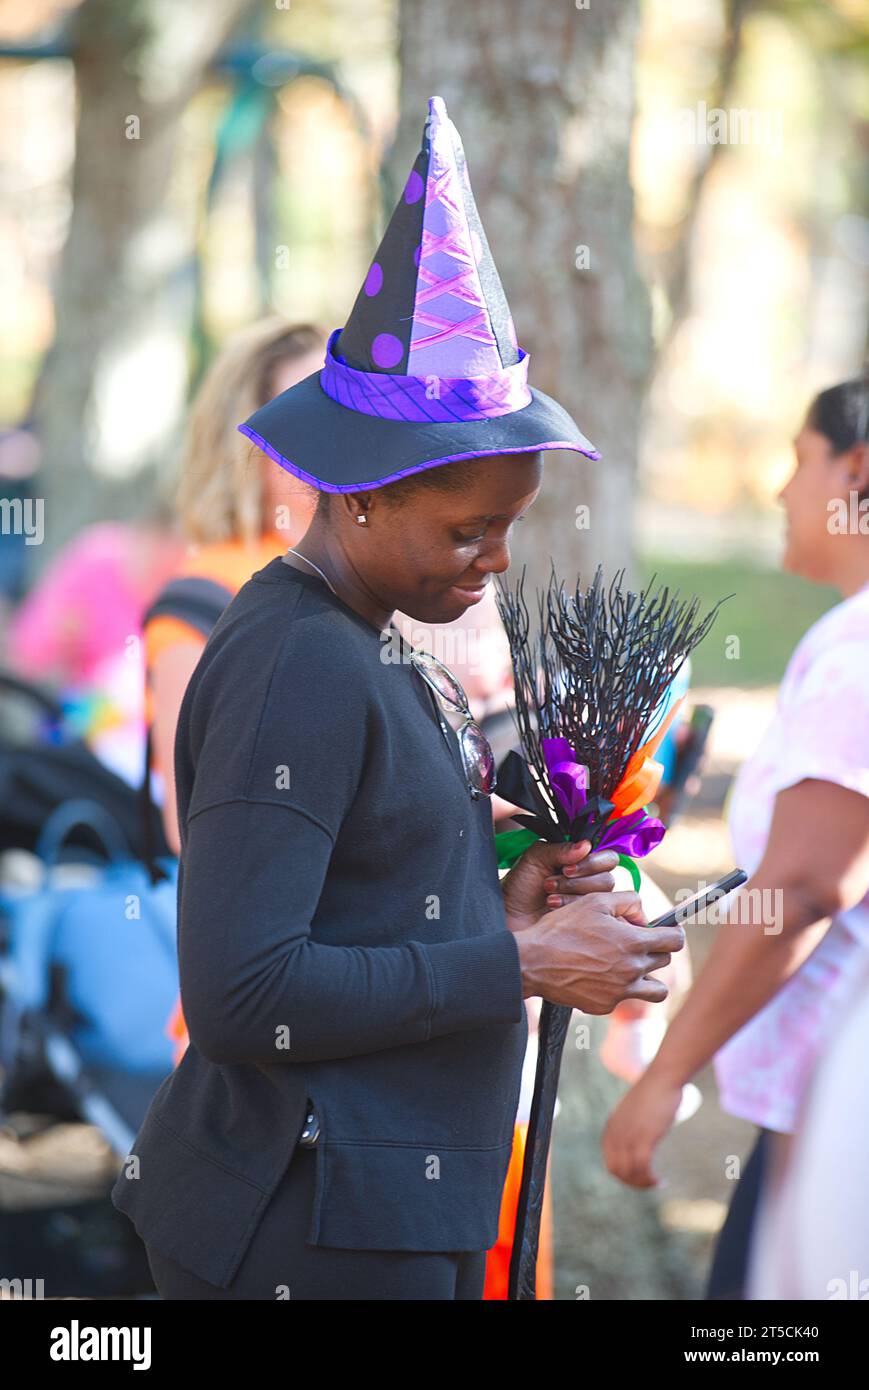 Halloweenpalooza - Dennis, Massachusetts auf Cape Cod. Eine Familienfeier an Halloween. Eine Hexe überprüft ihr Handy. Stockfoto